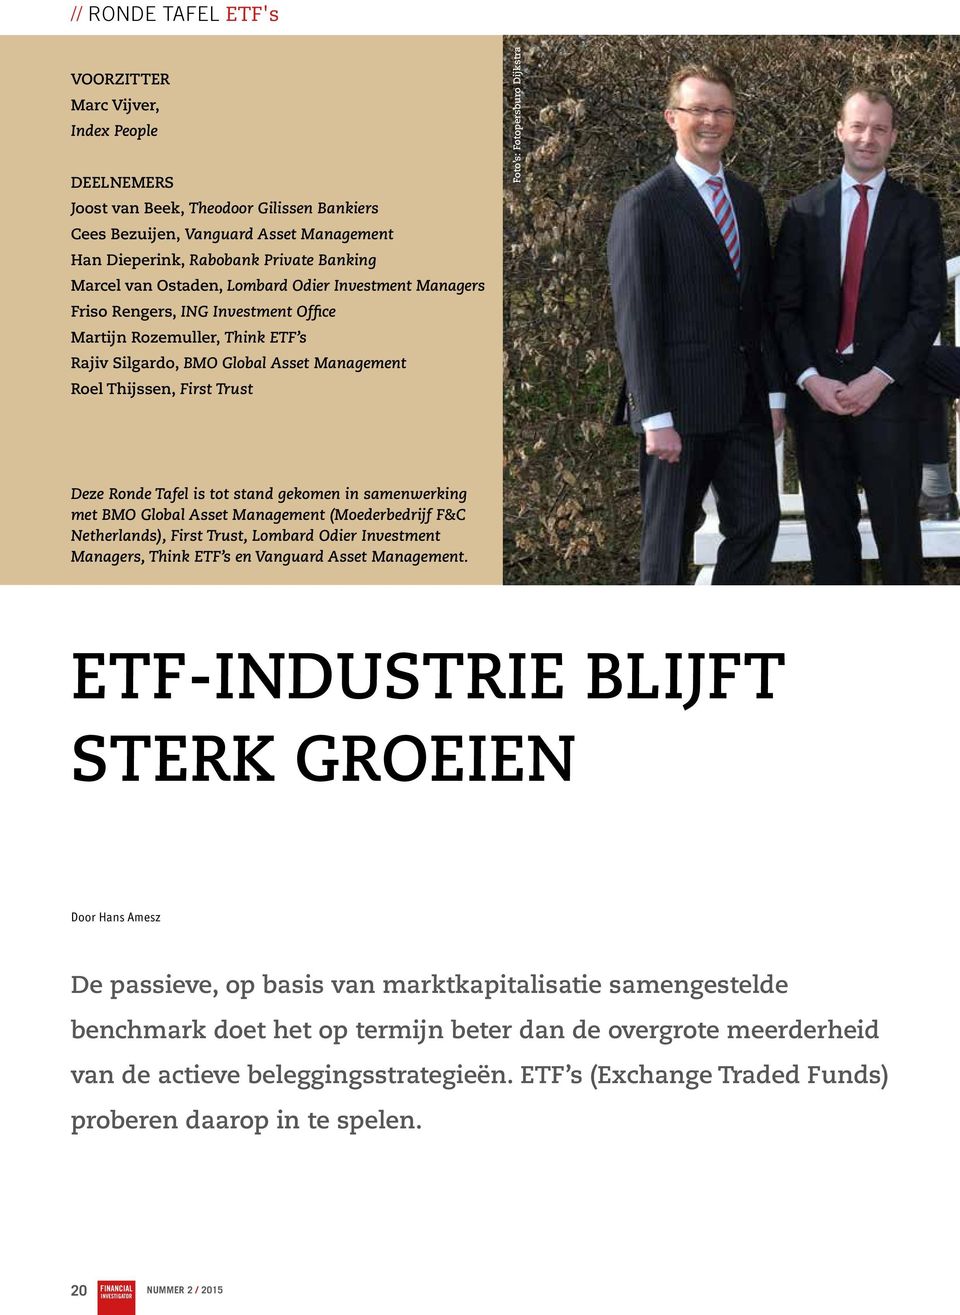 Deze Ronde Tafel is tot stand gekomen in samenwerking met BMO Global Asset Management (Moederbedrijf F&C Netherlands), First Trust, Lombard Odier Investment Managers, Think ETF s en Vanguard Asset